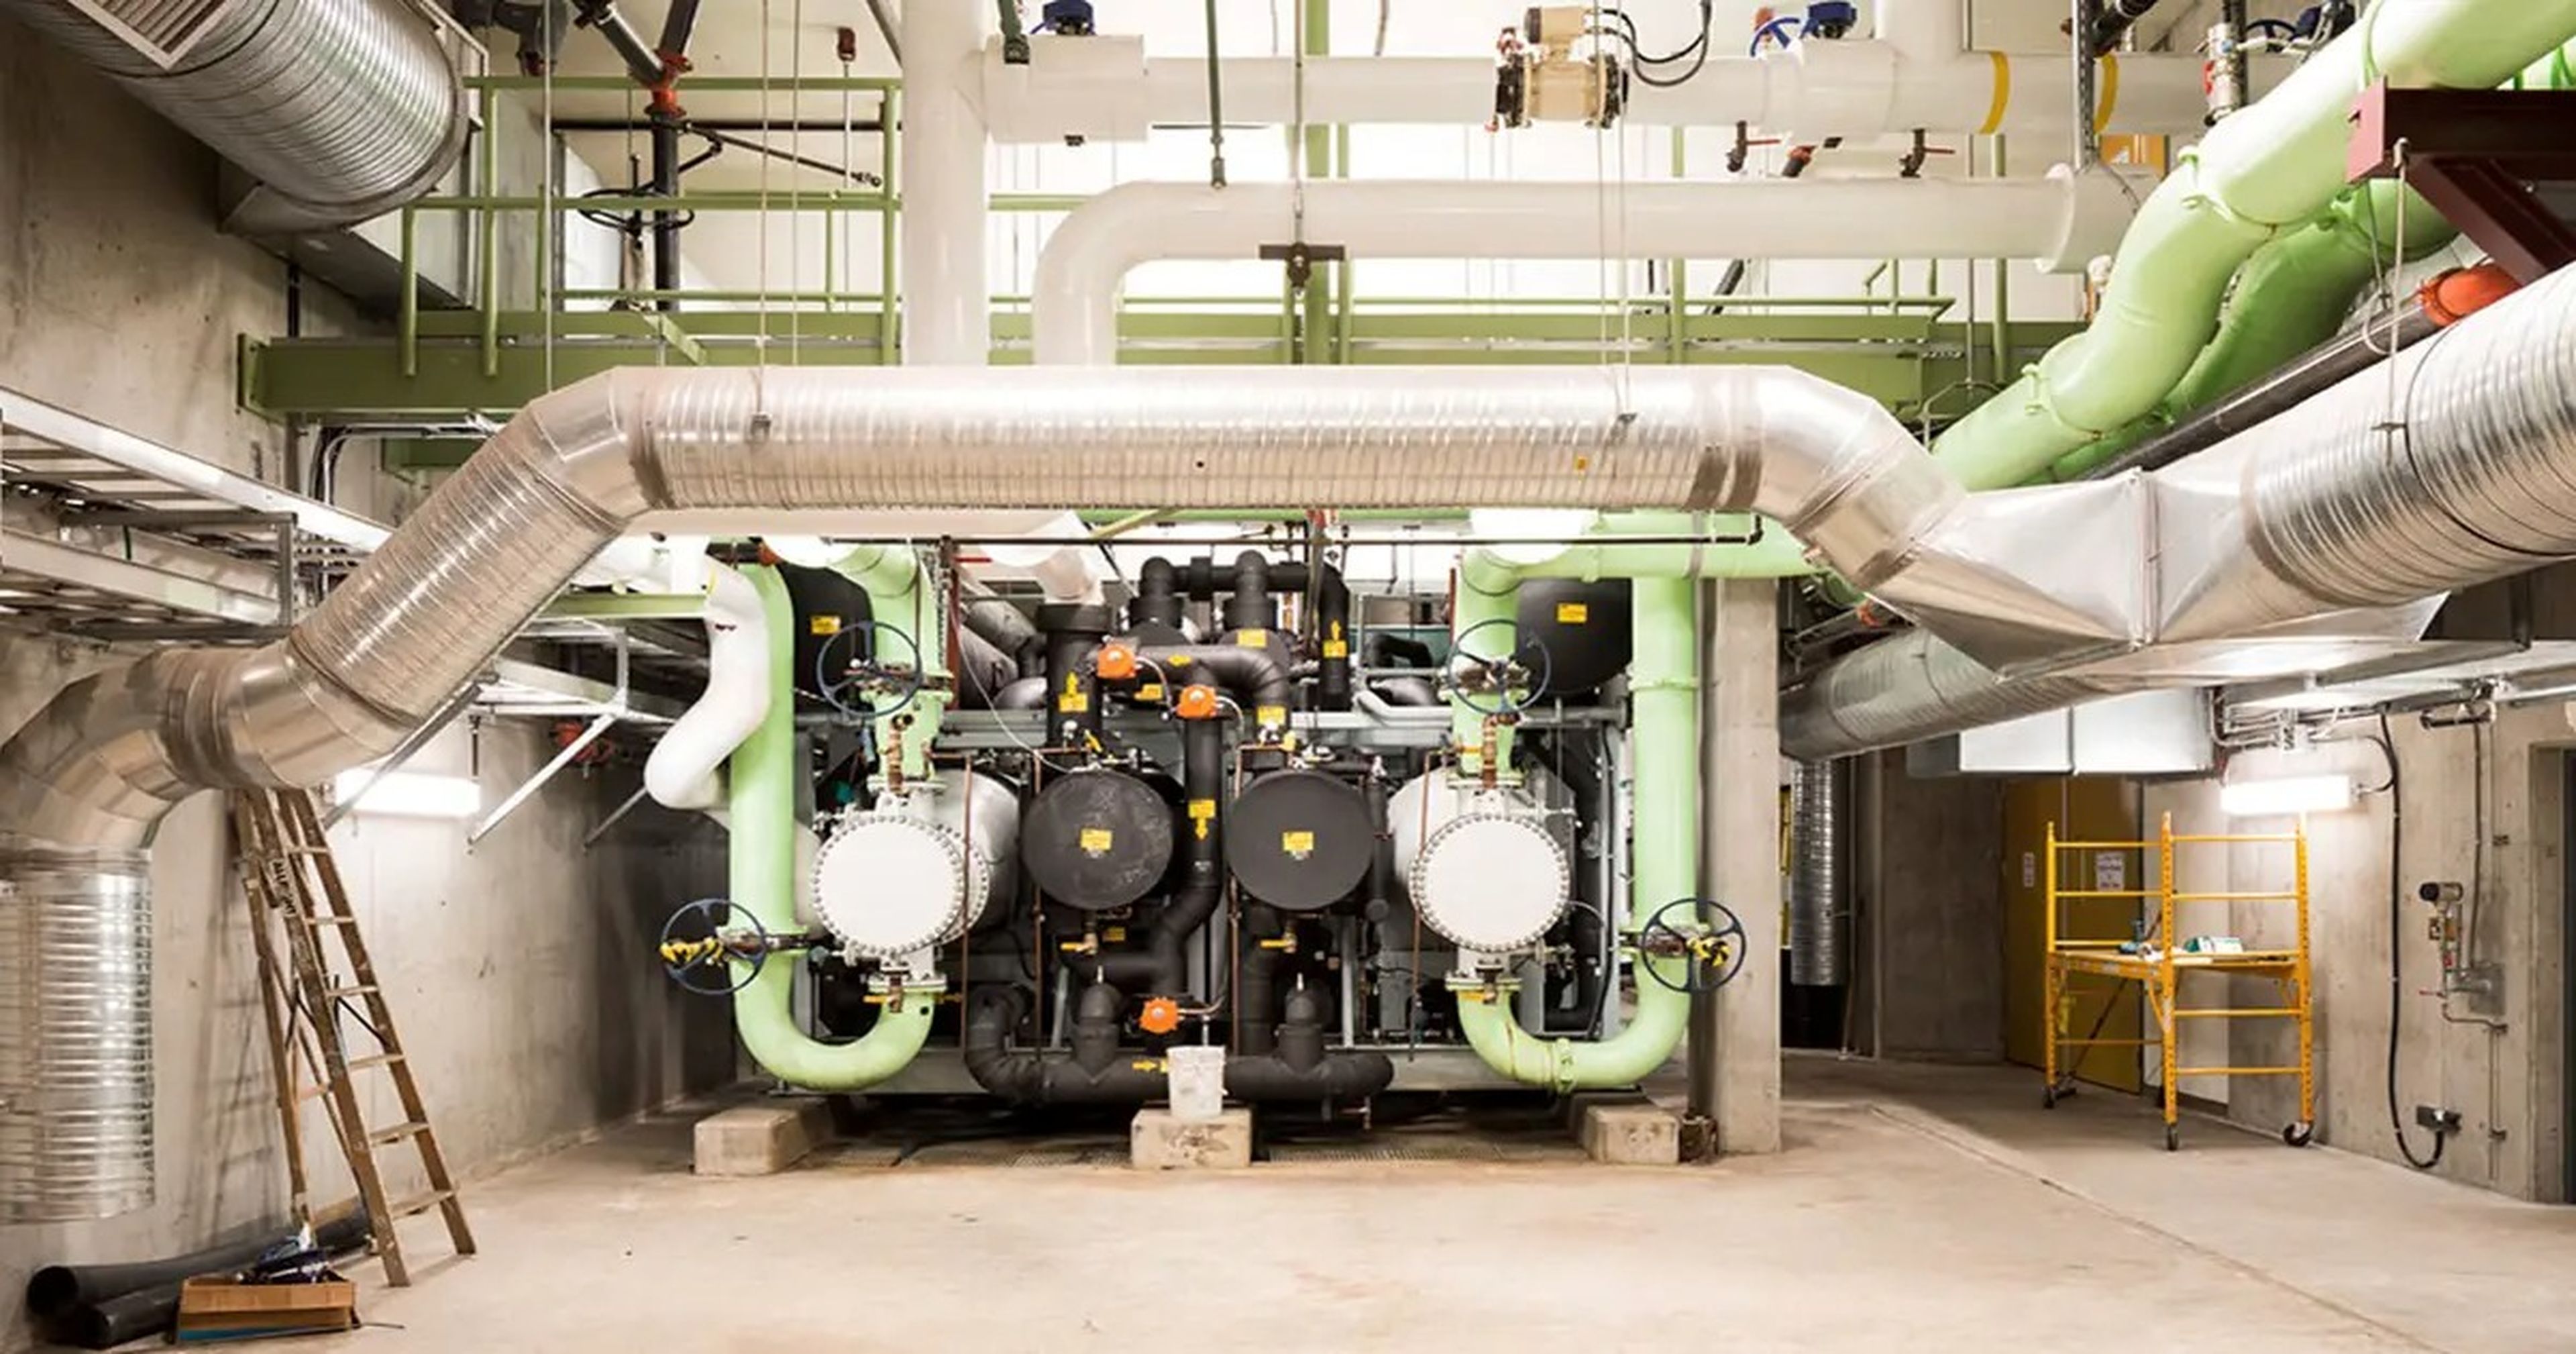 Las tuberías verdes del centro de energía de la empresa Neighbourhood Energy Utility desvían las aguas residuales a las bombas de calor.